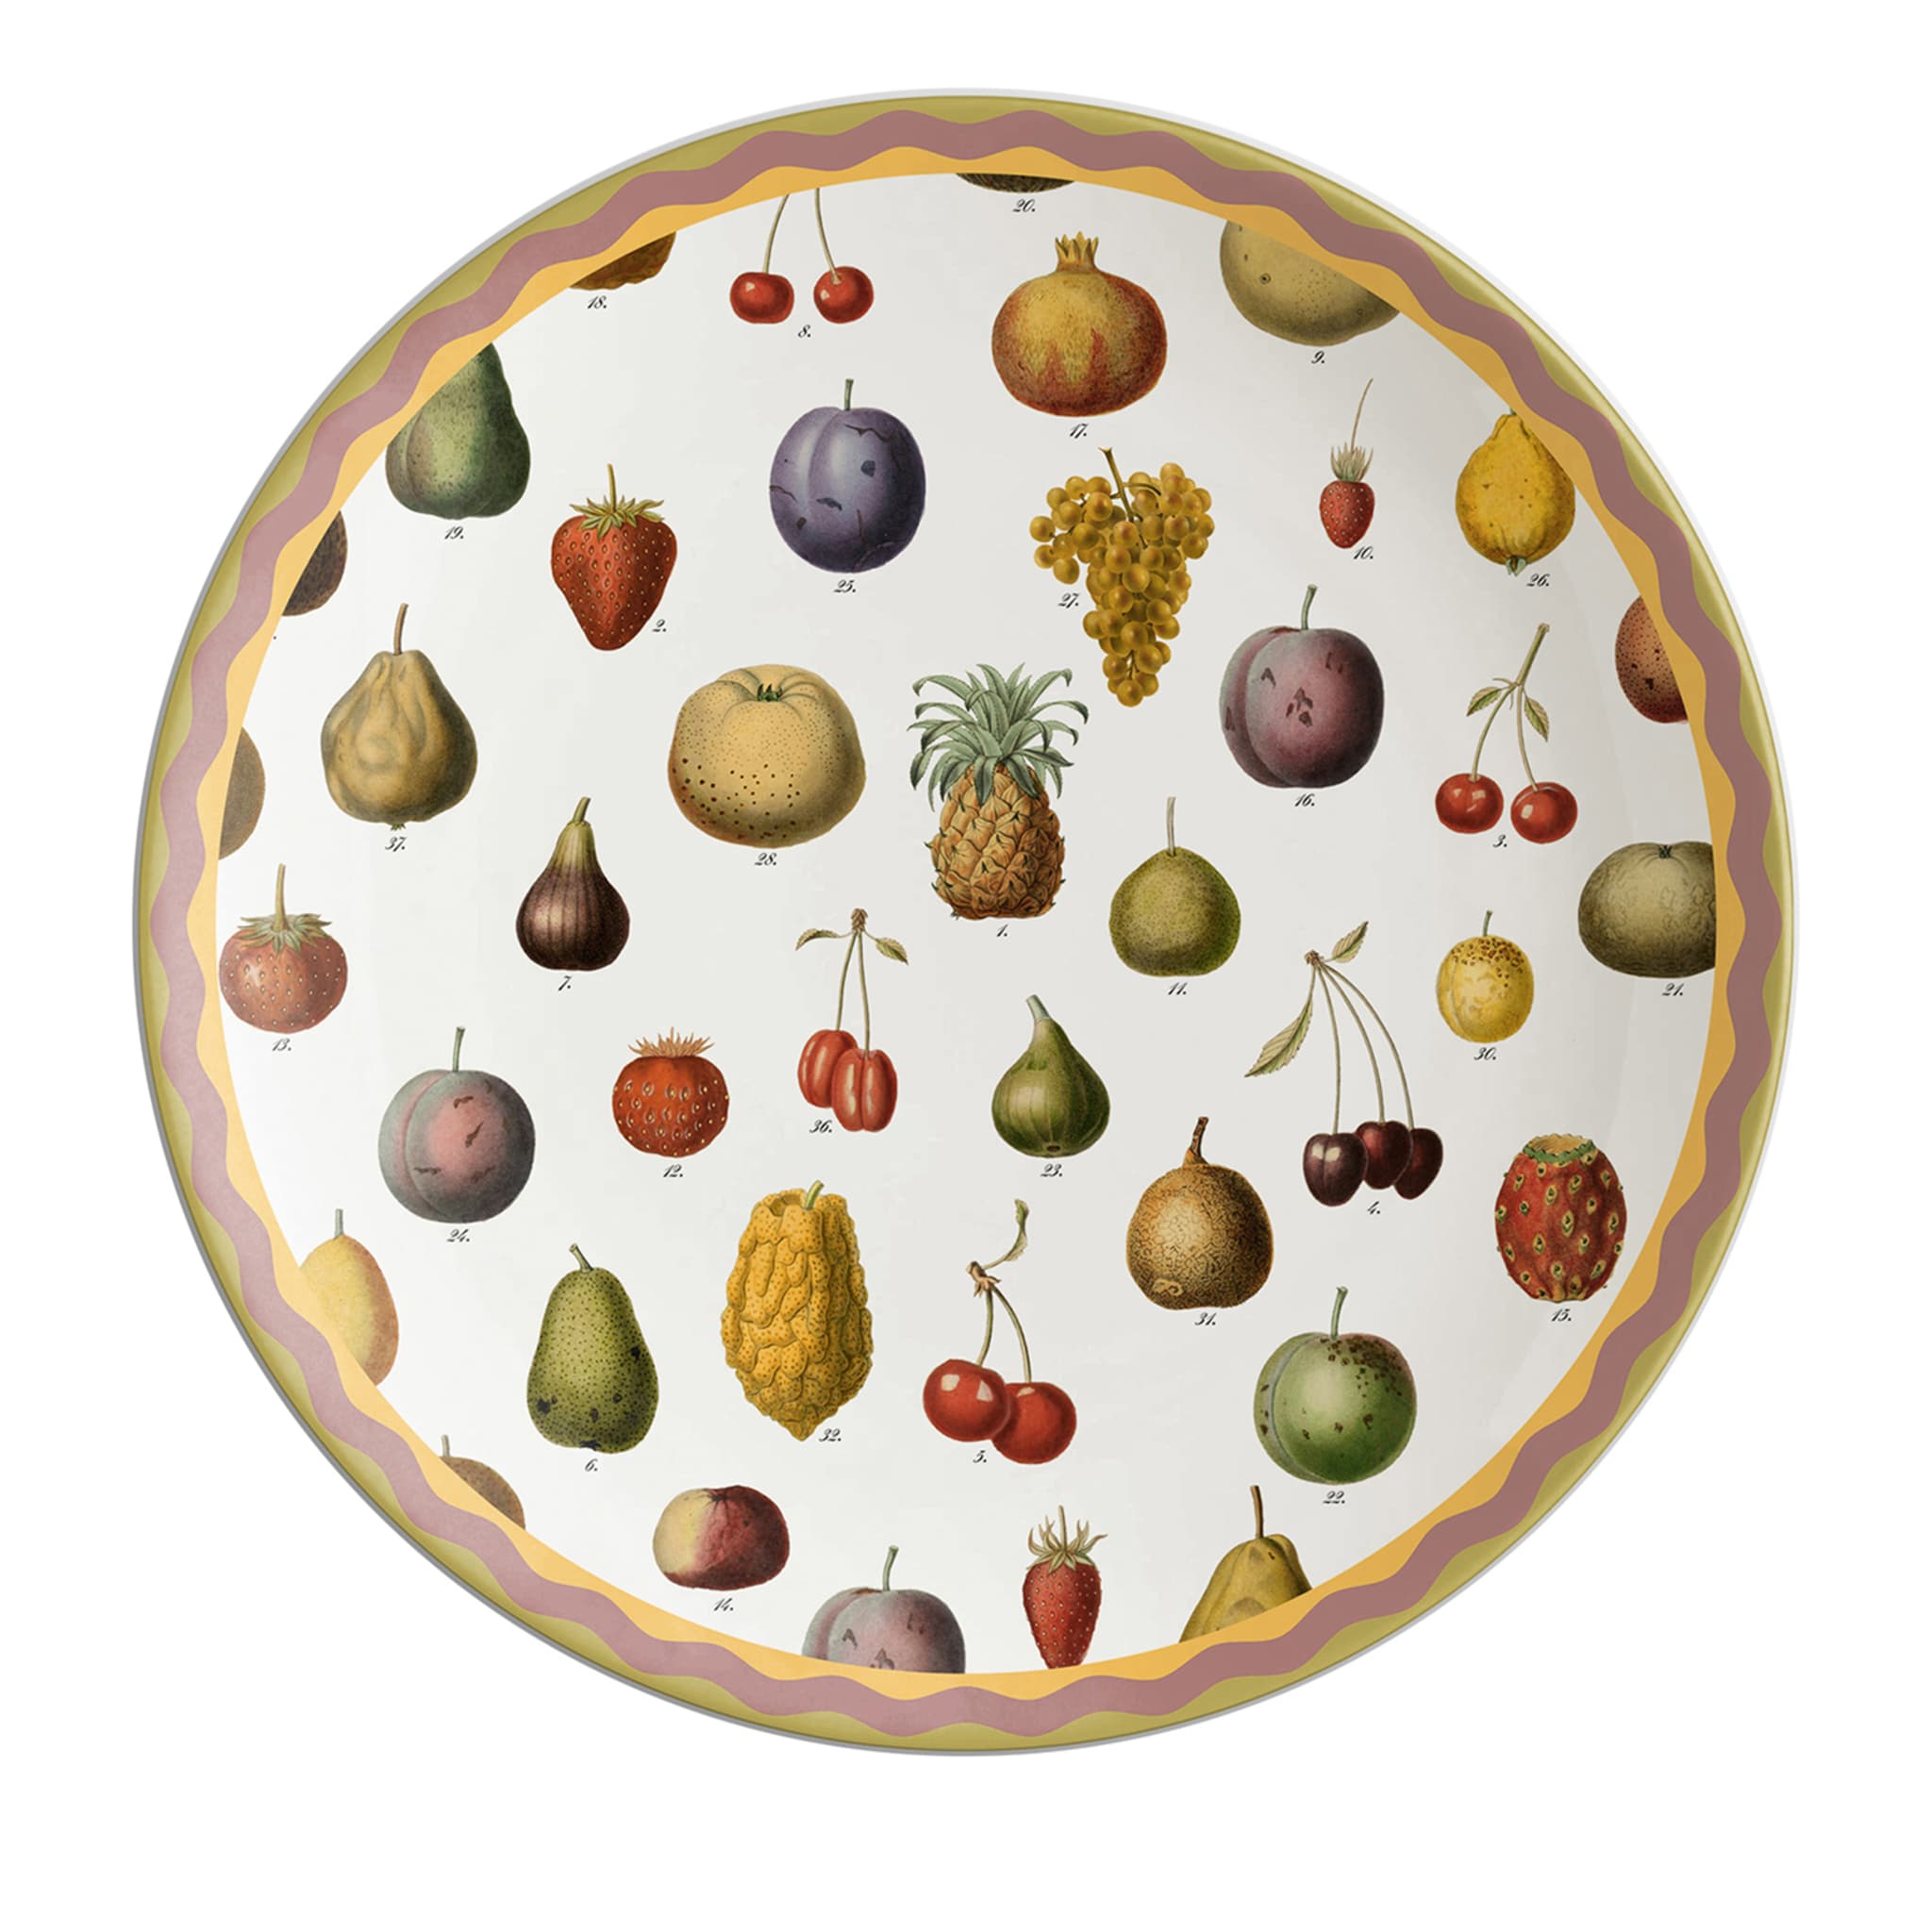 Cabinet De Curiosités Porcelain Charger Plate With Fruits - Main view